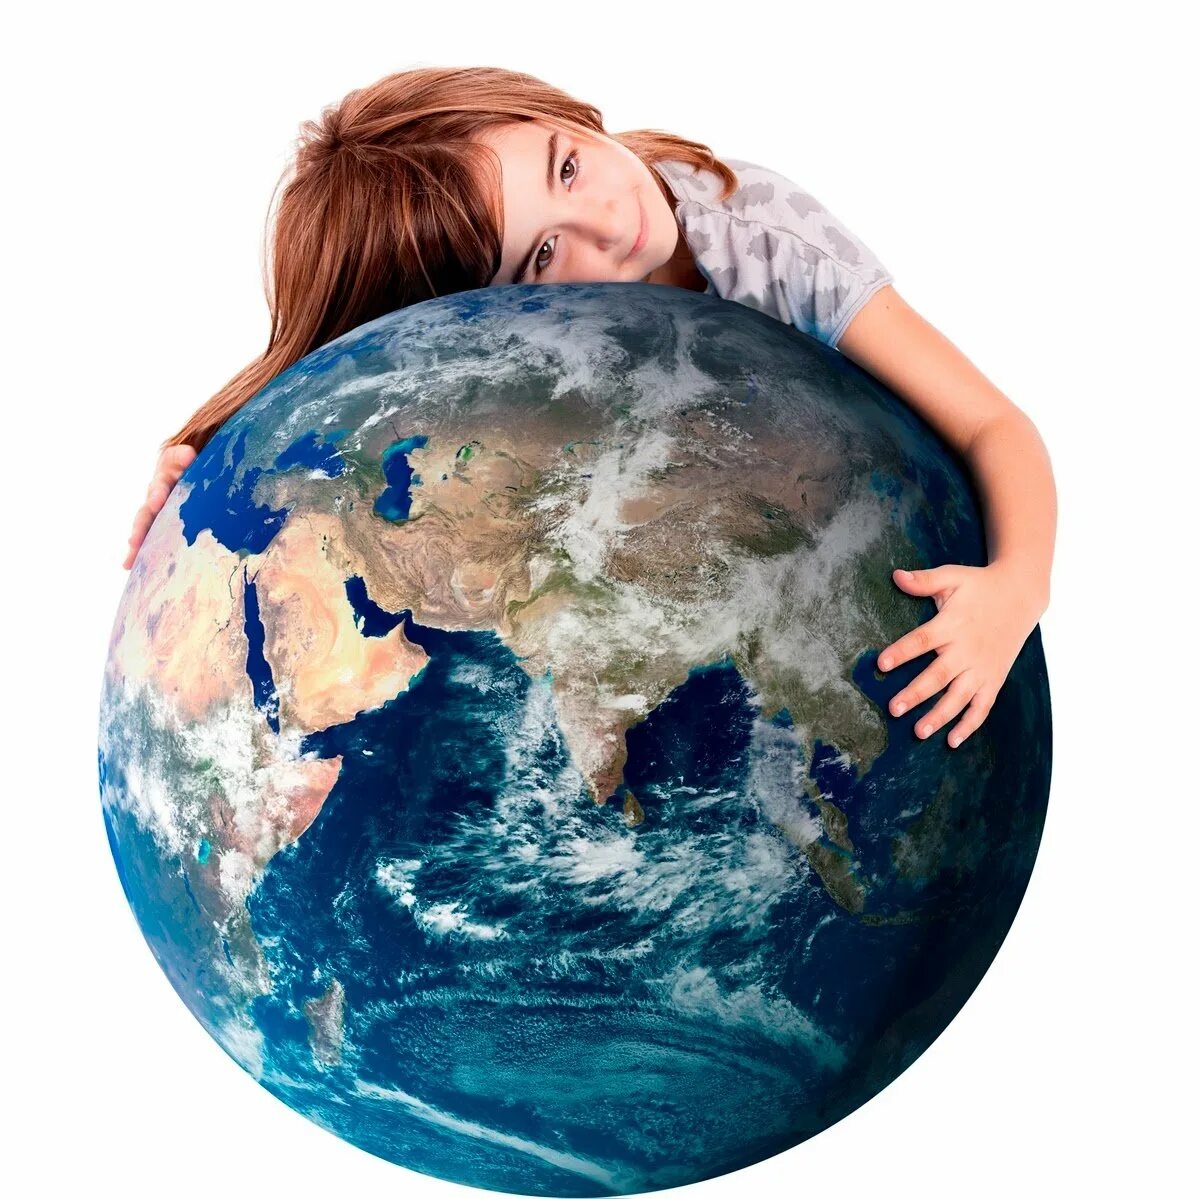 Обнимает планету. Человек обнимает планету. Обнять планету. Руки обнимающие земной шар. Ребенок обнимает земной шар.